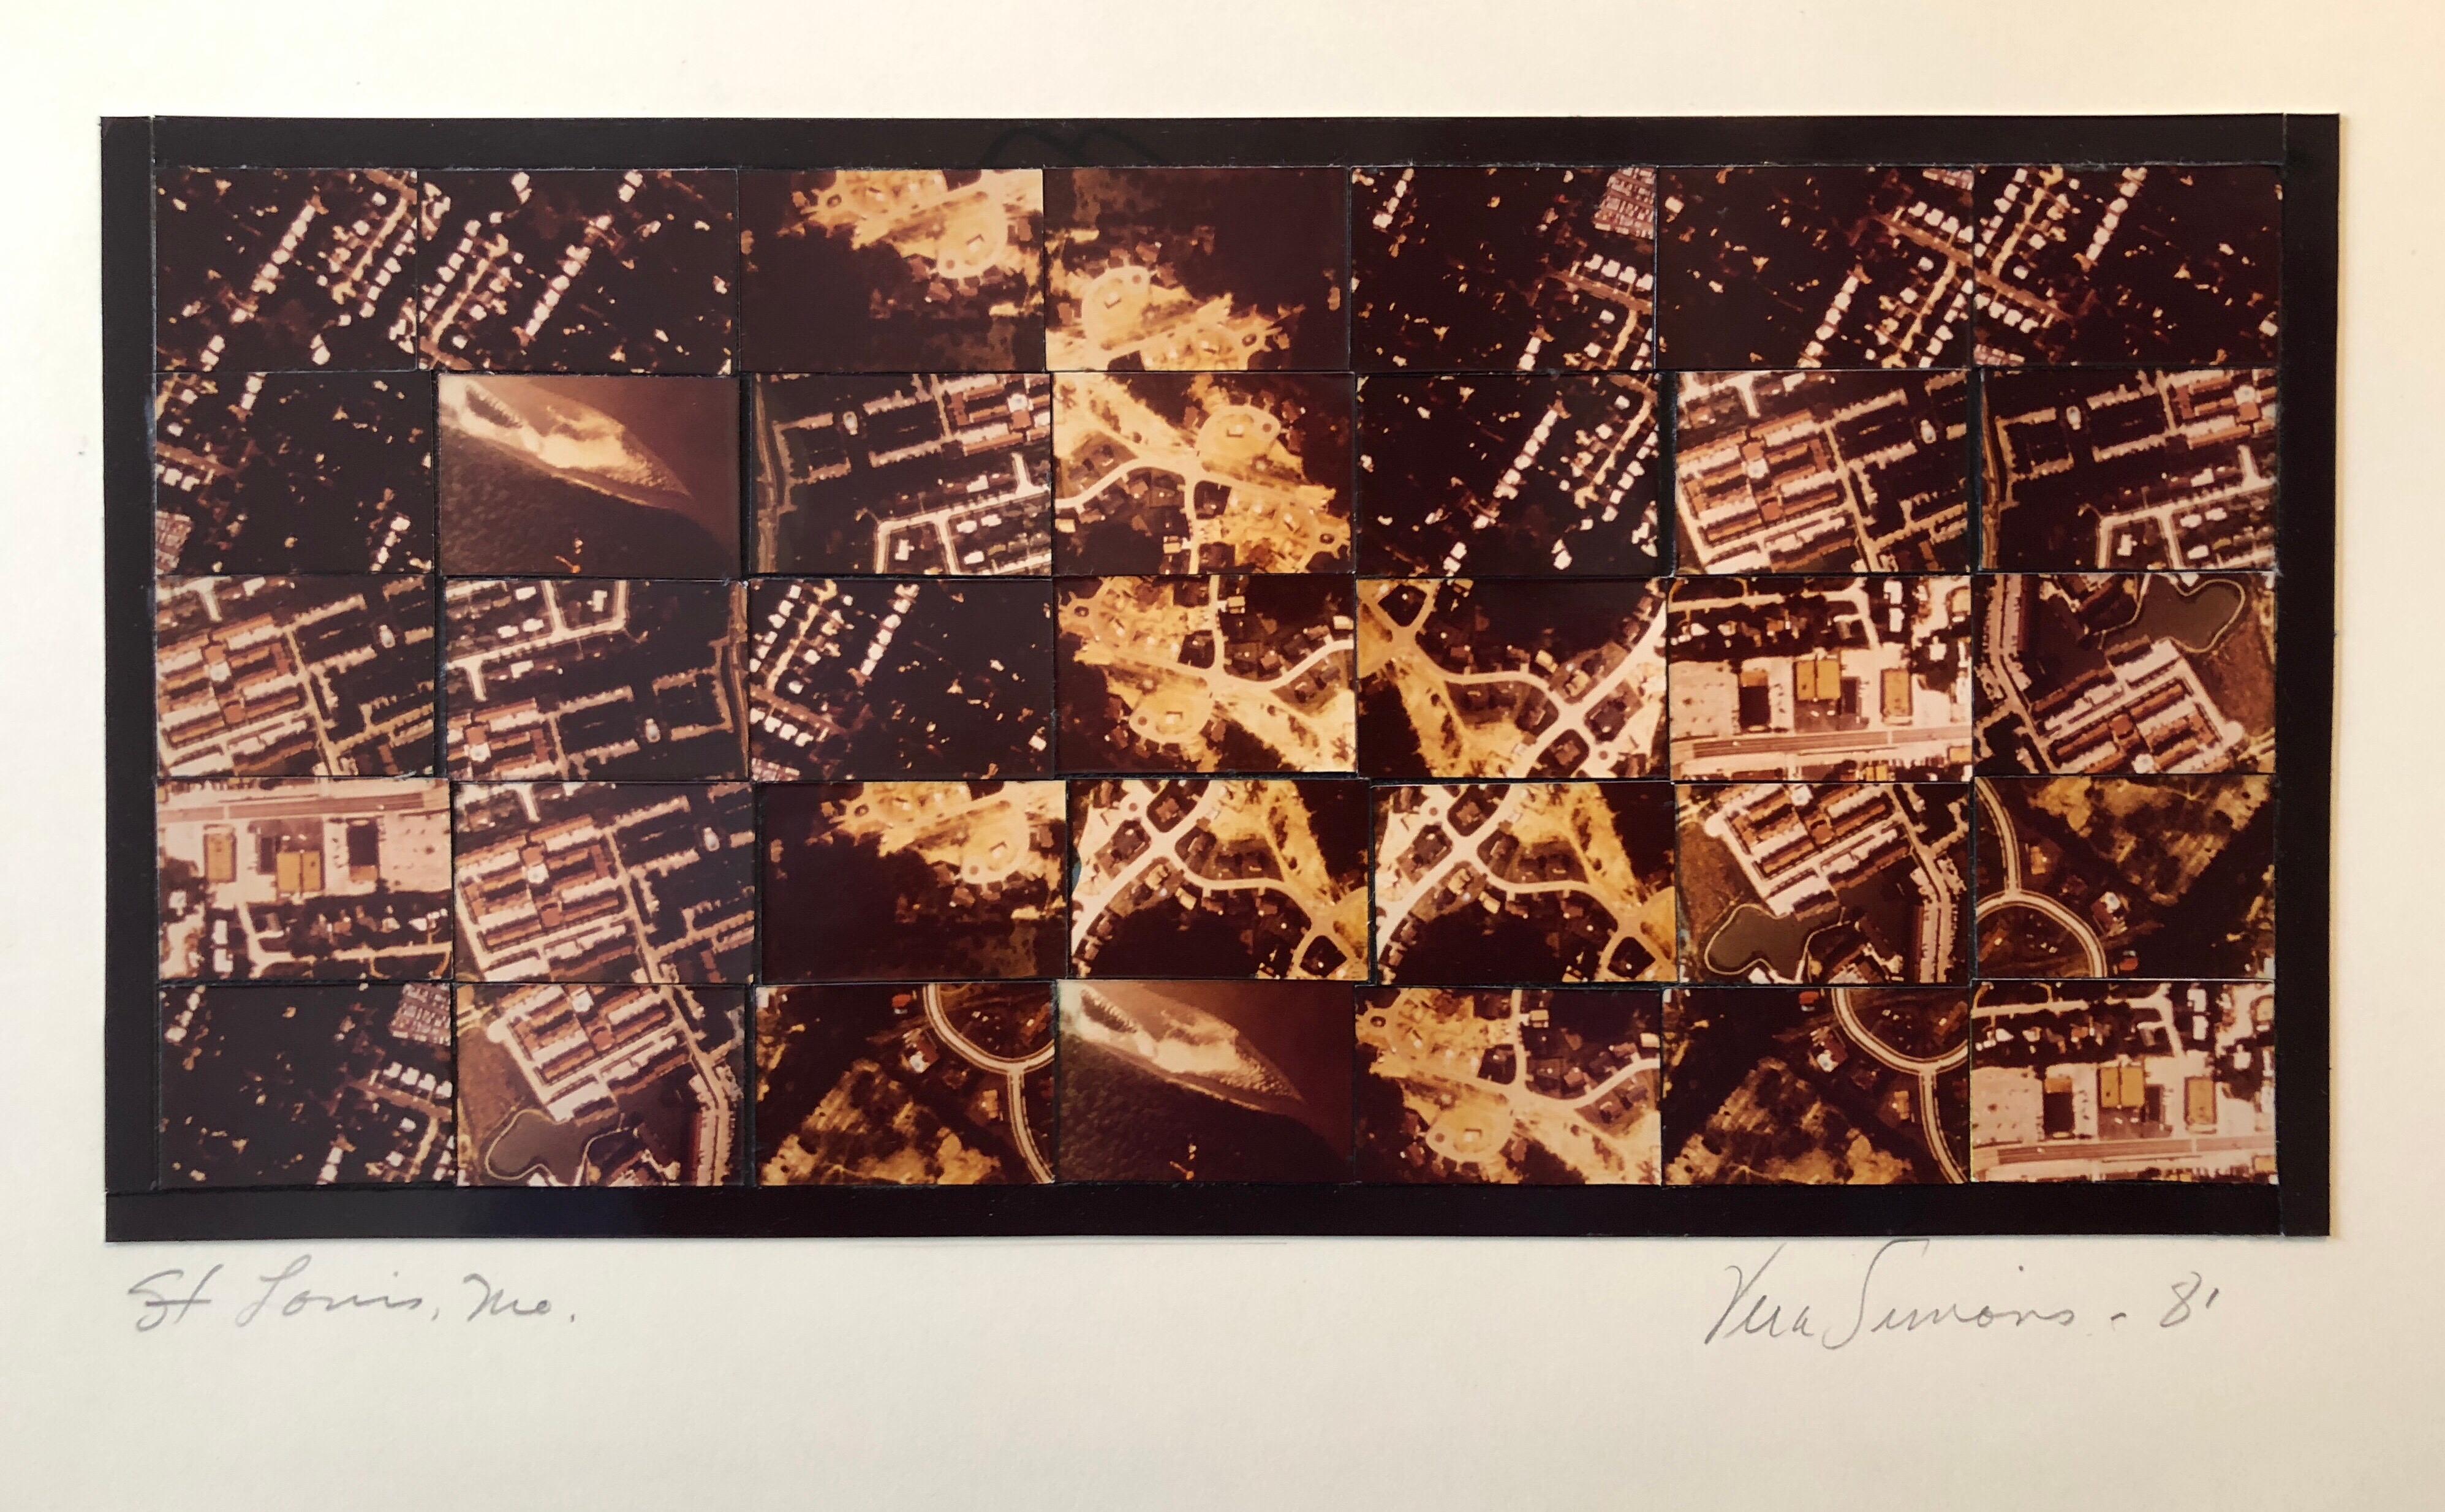 Landscape Photograph Vera Simons -  Photographie aérienne avec collage de mosaïque photographique de la St Louis MO, Femme aviatrice féministe